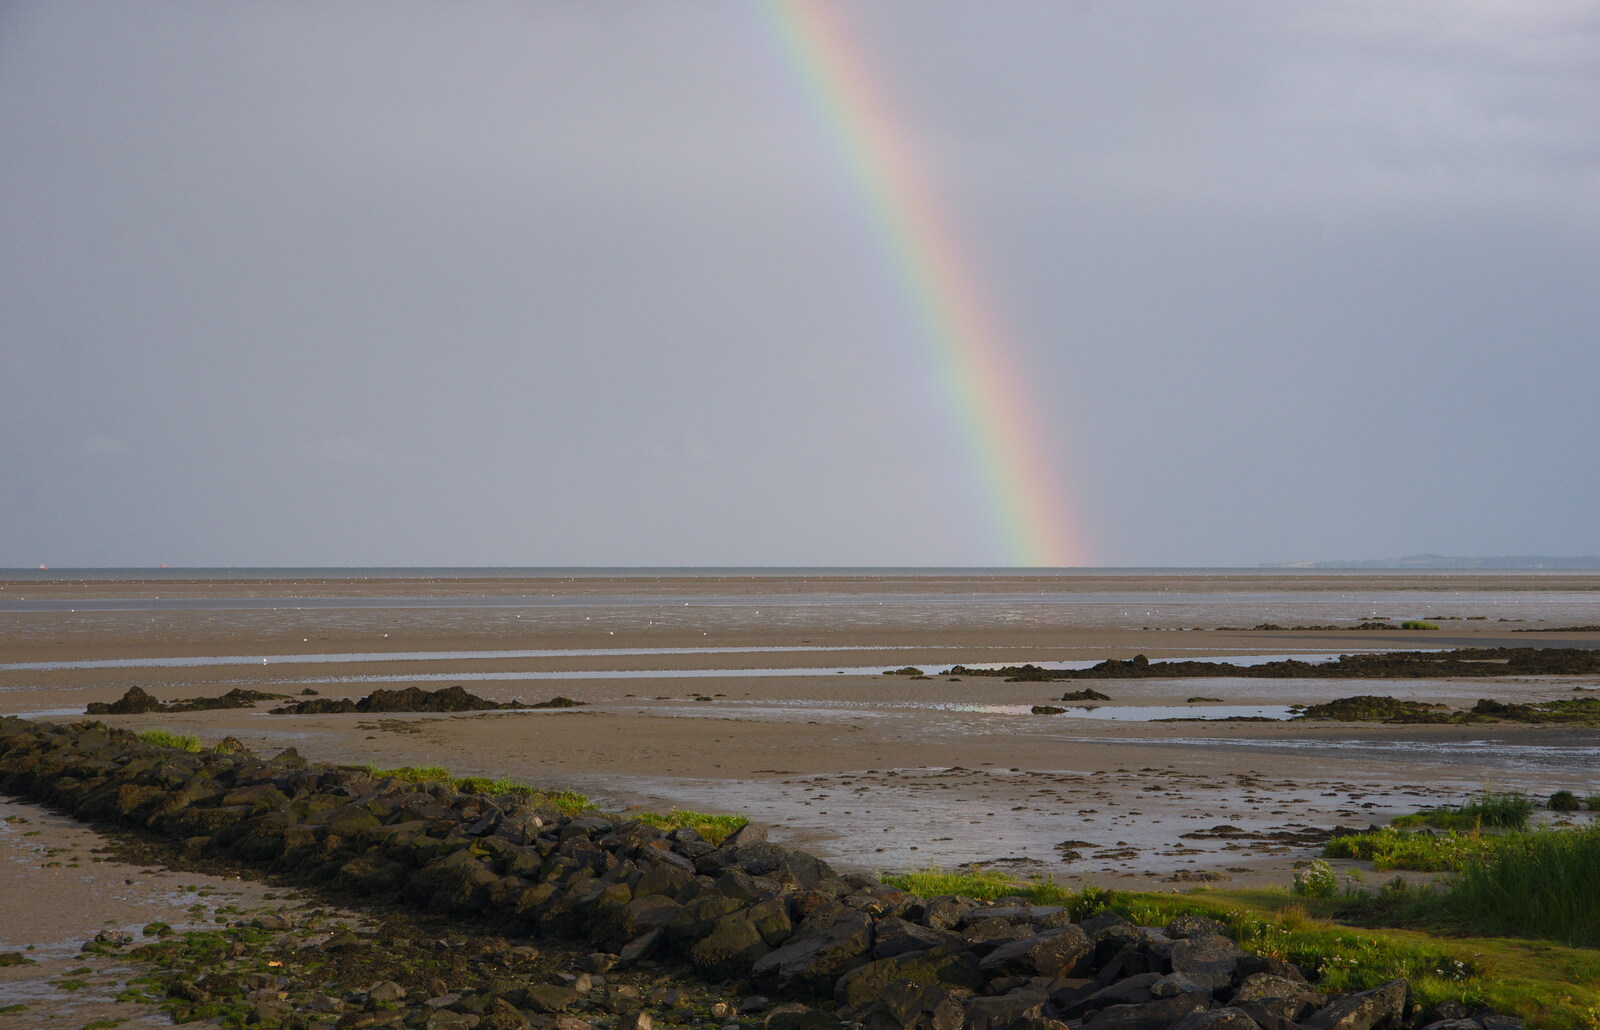 The rainbow's end lands in the sea from The Fleadh Cheoil na hÉireann, Droichead Átha, Co. Louth, Ireland - 13th August 2019